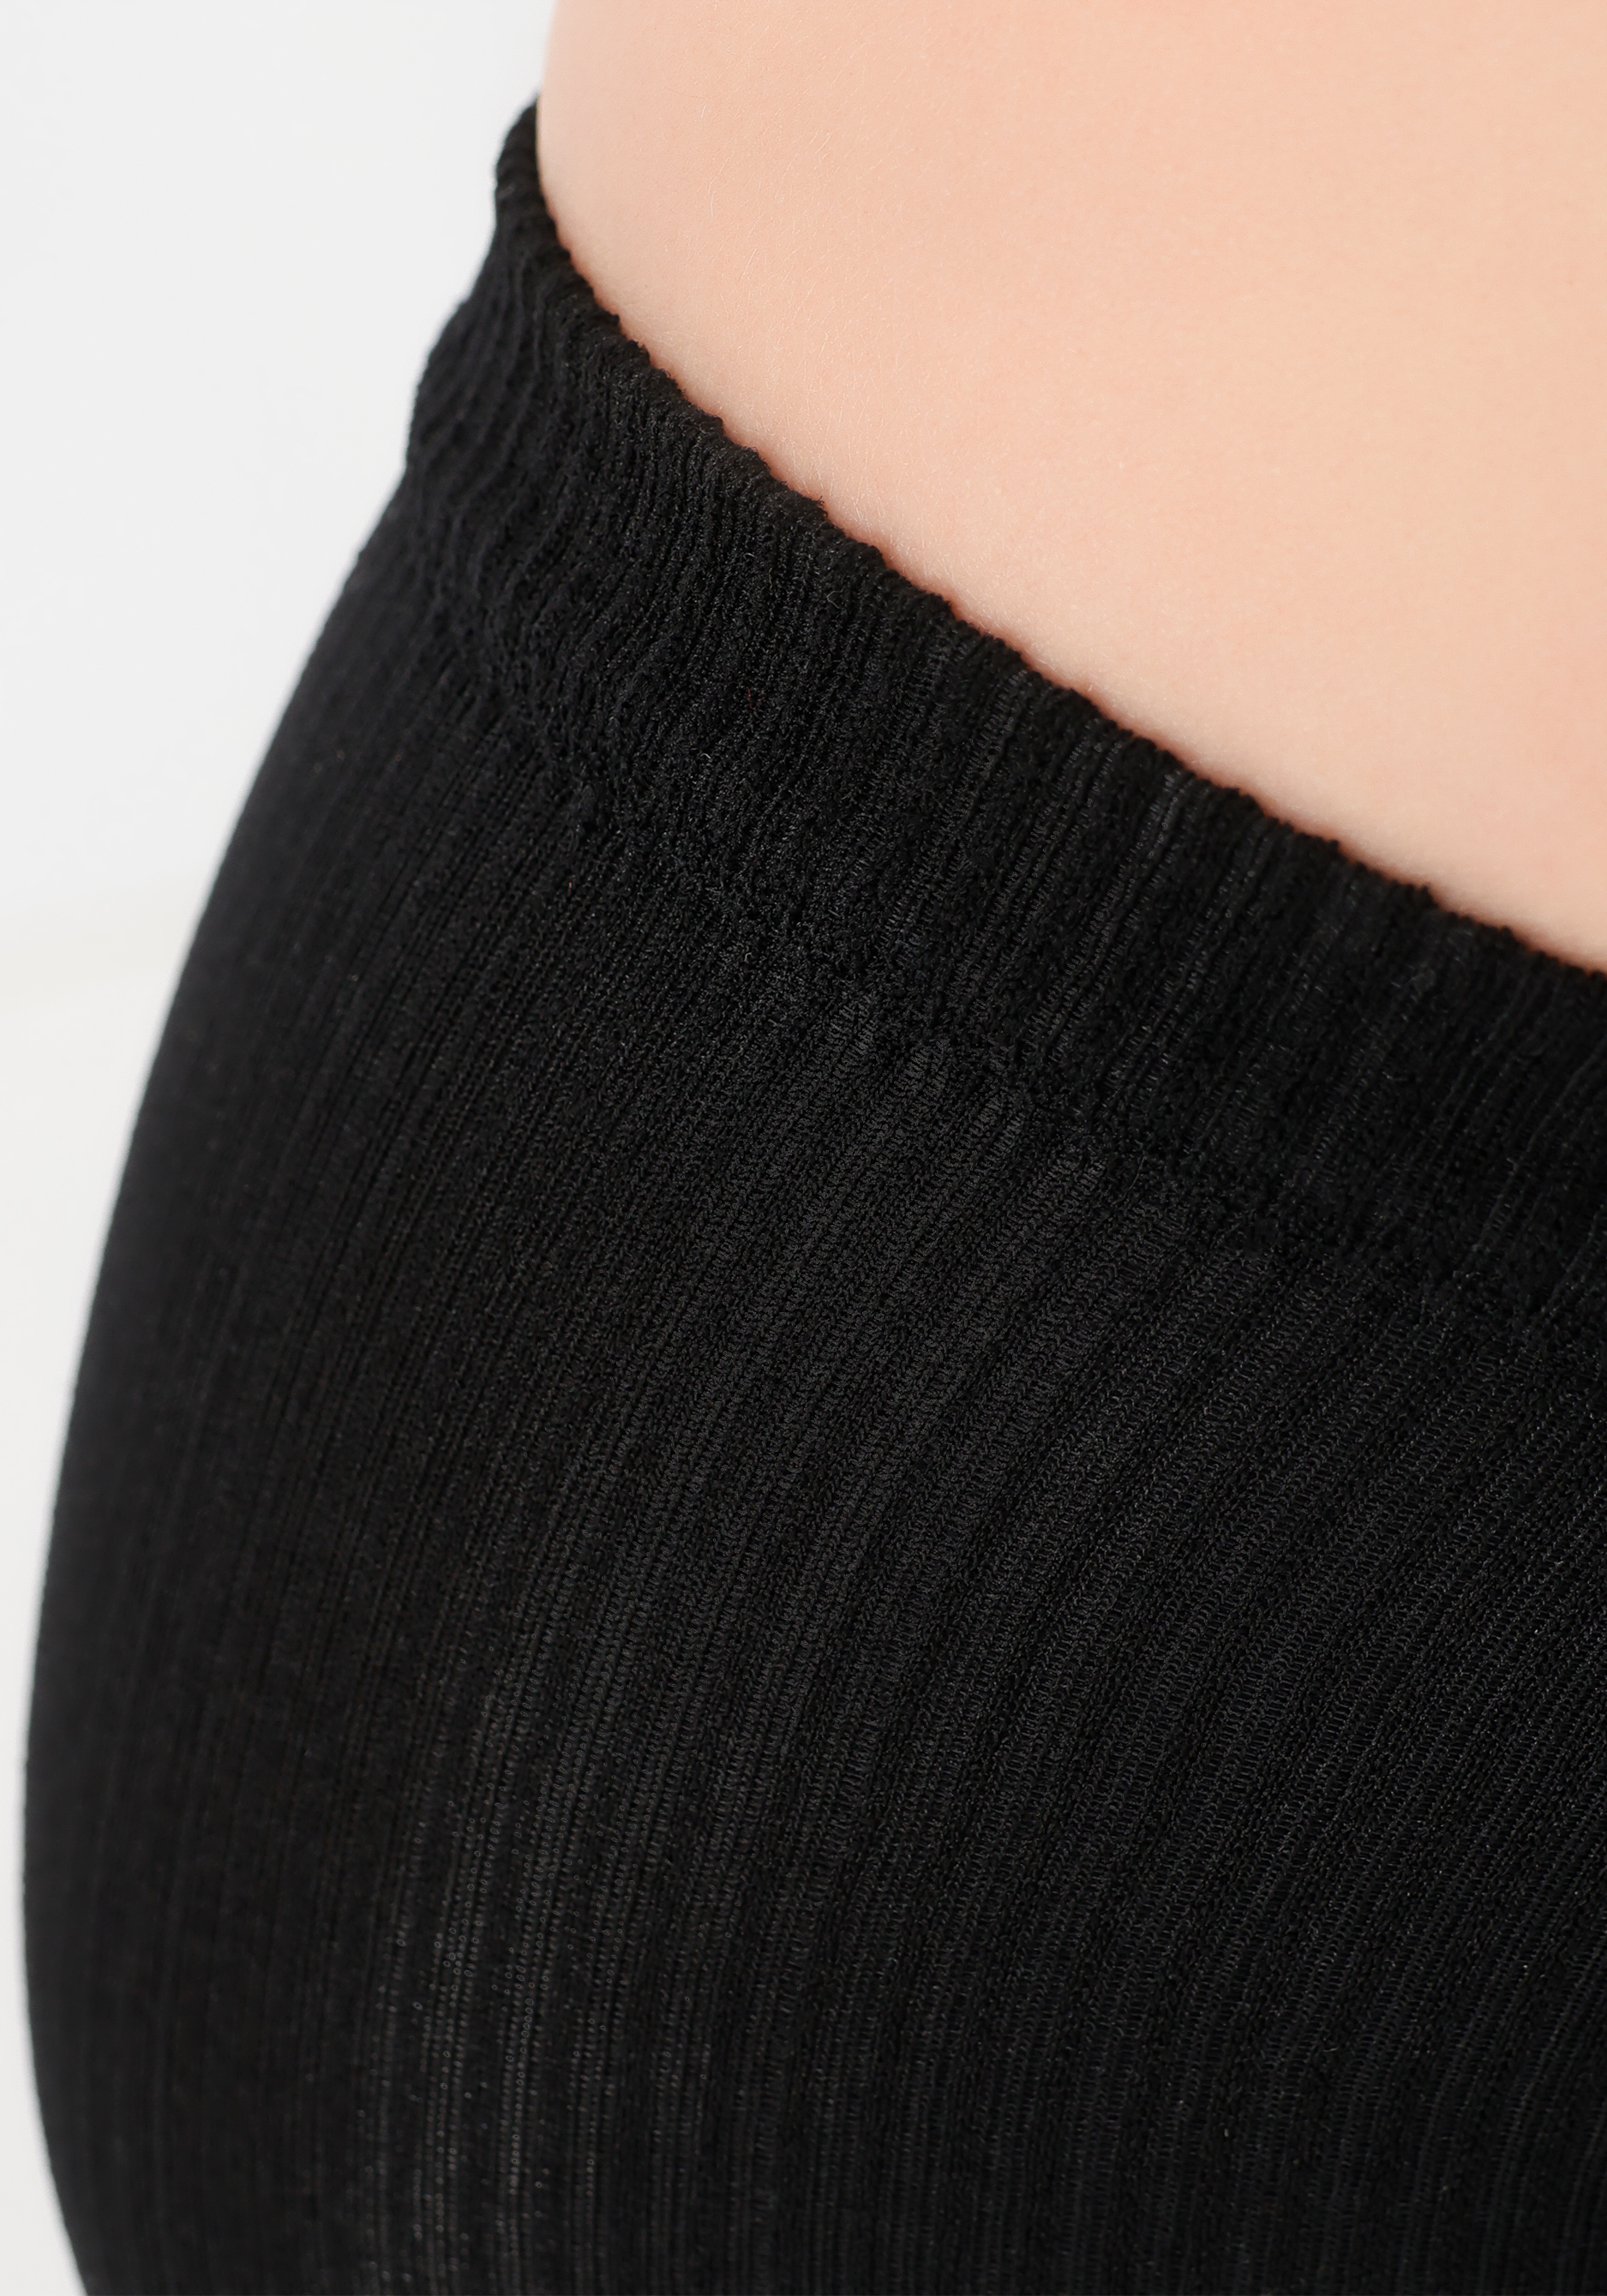 Бандаж коленного сустава, 2 шт. Filorosso, цвет черный, размер 2 - фото 4